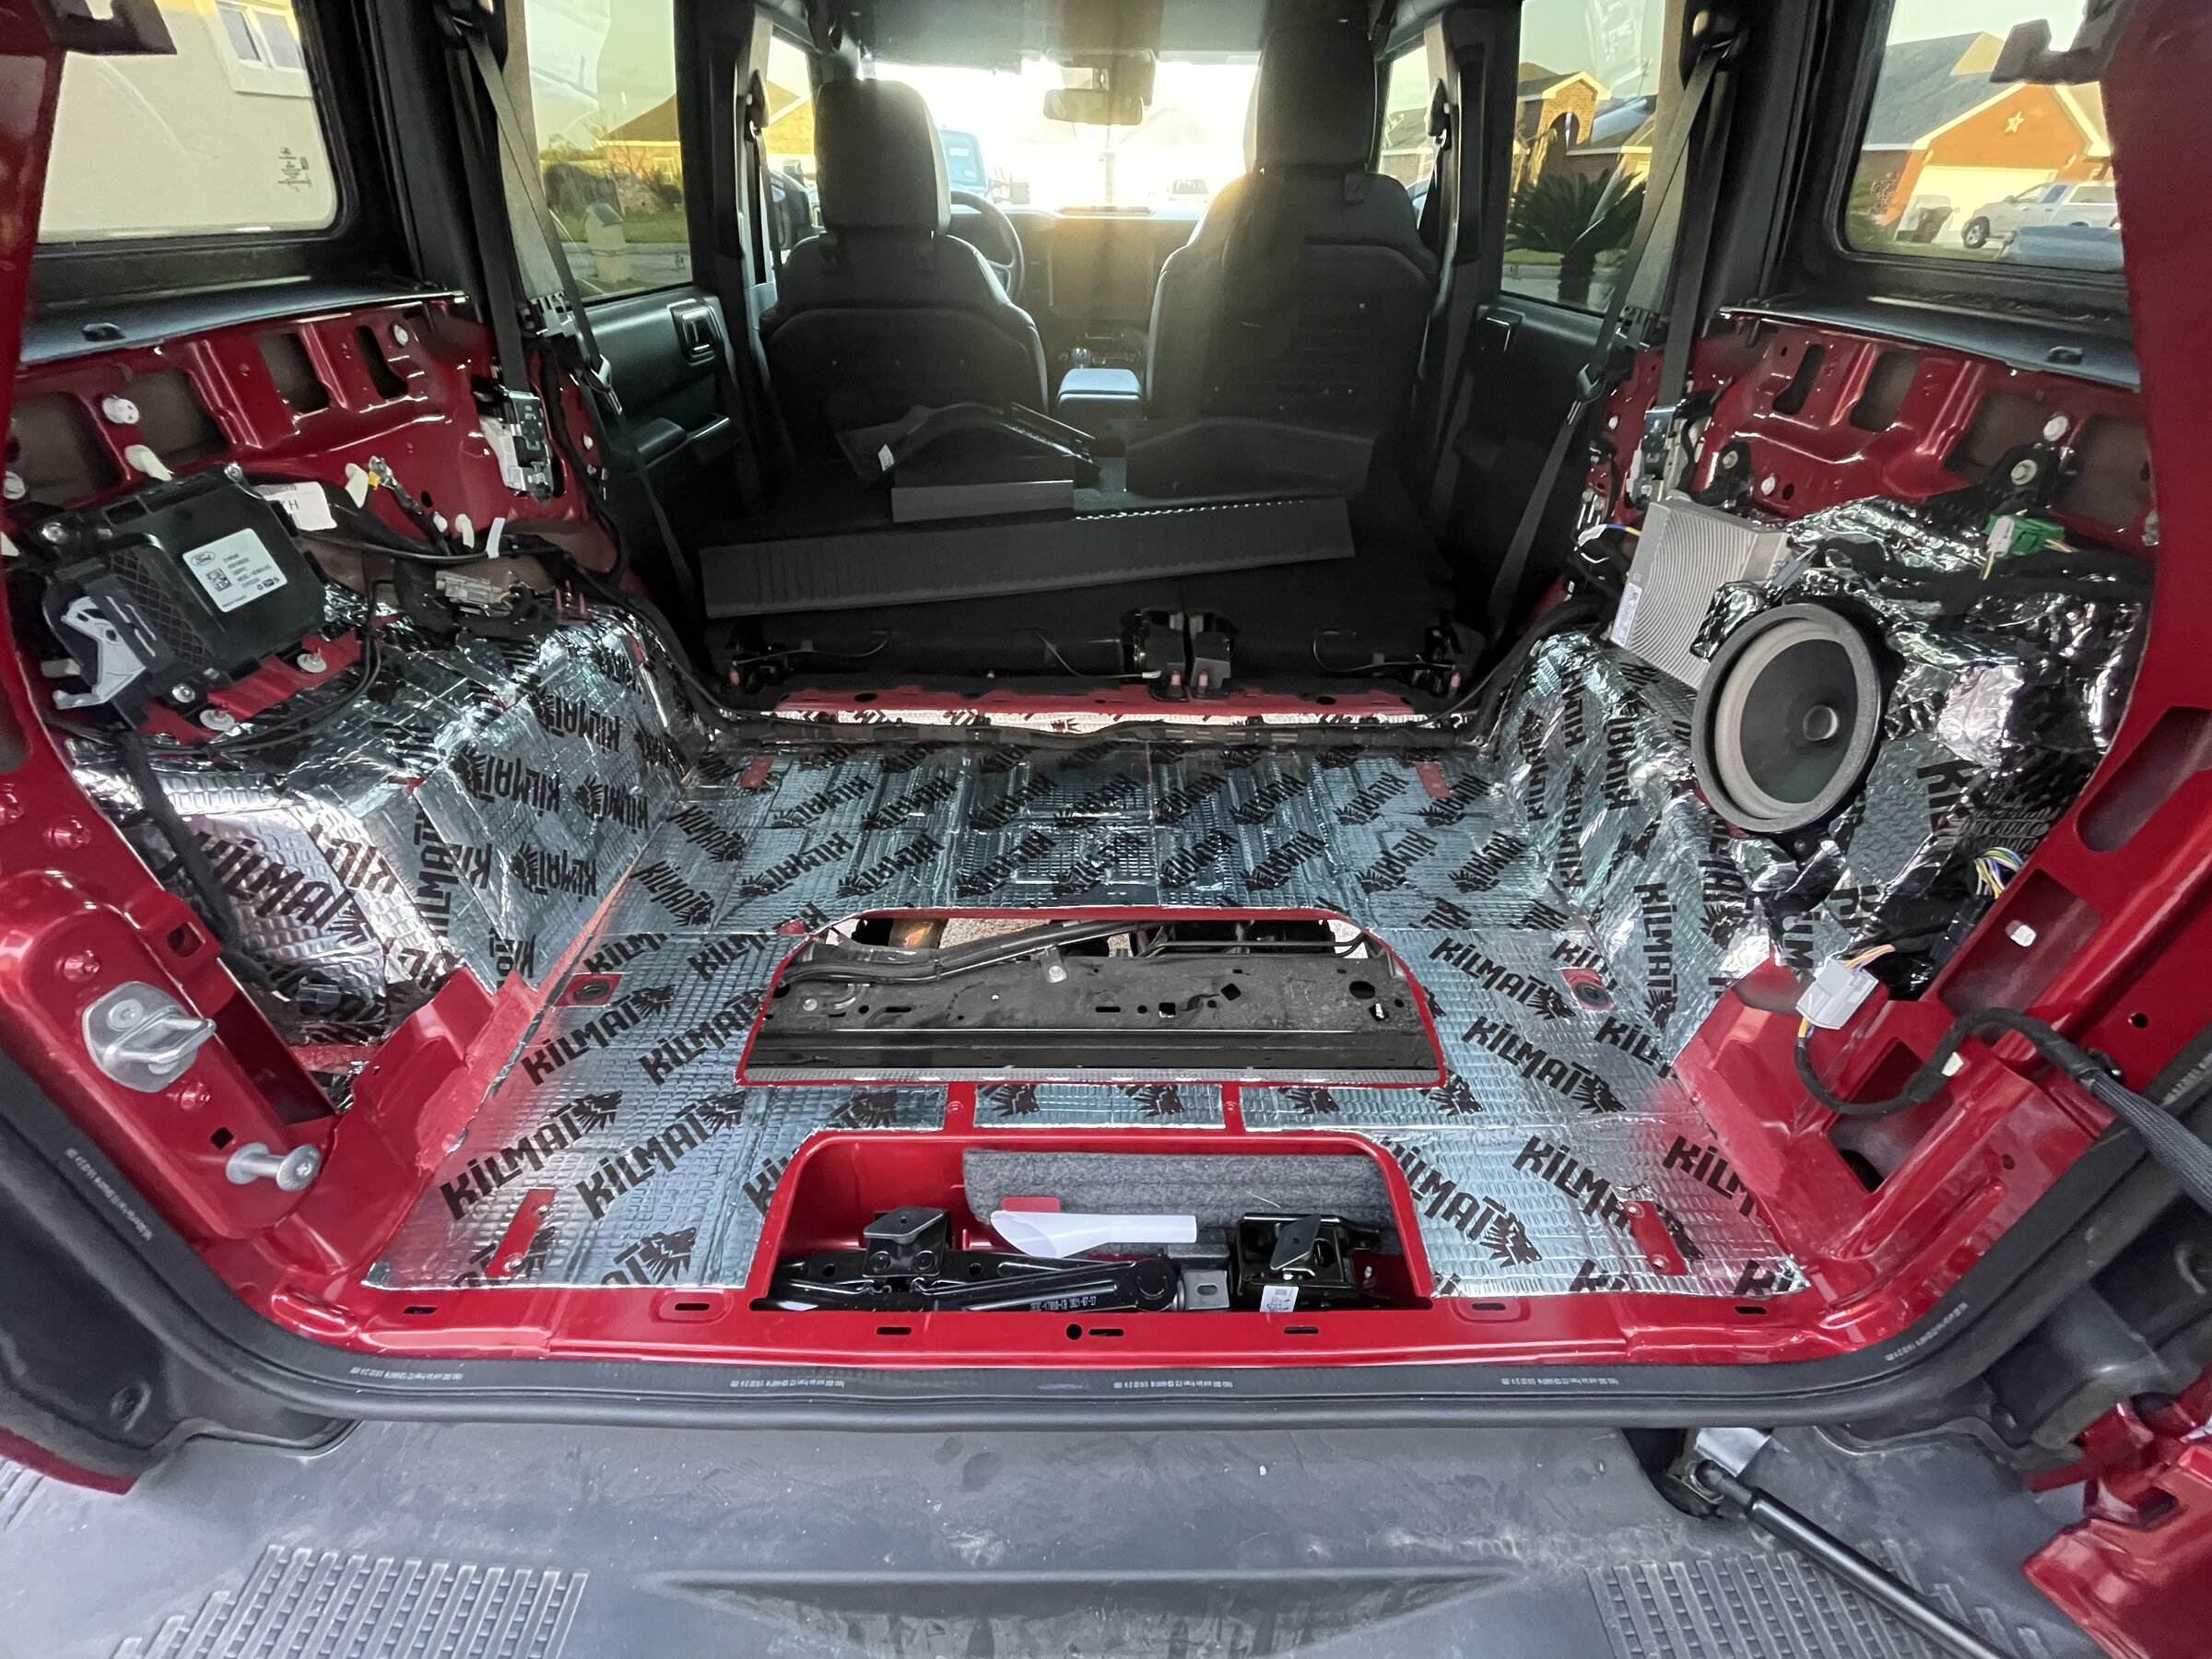 Ford Bronco B&O sound system complete upgrade - Done ✅ 8E21CFC7-1C70-4899-9843-AFFA71995826